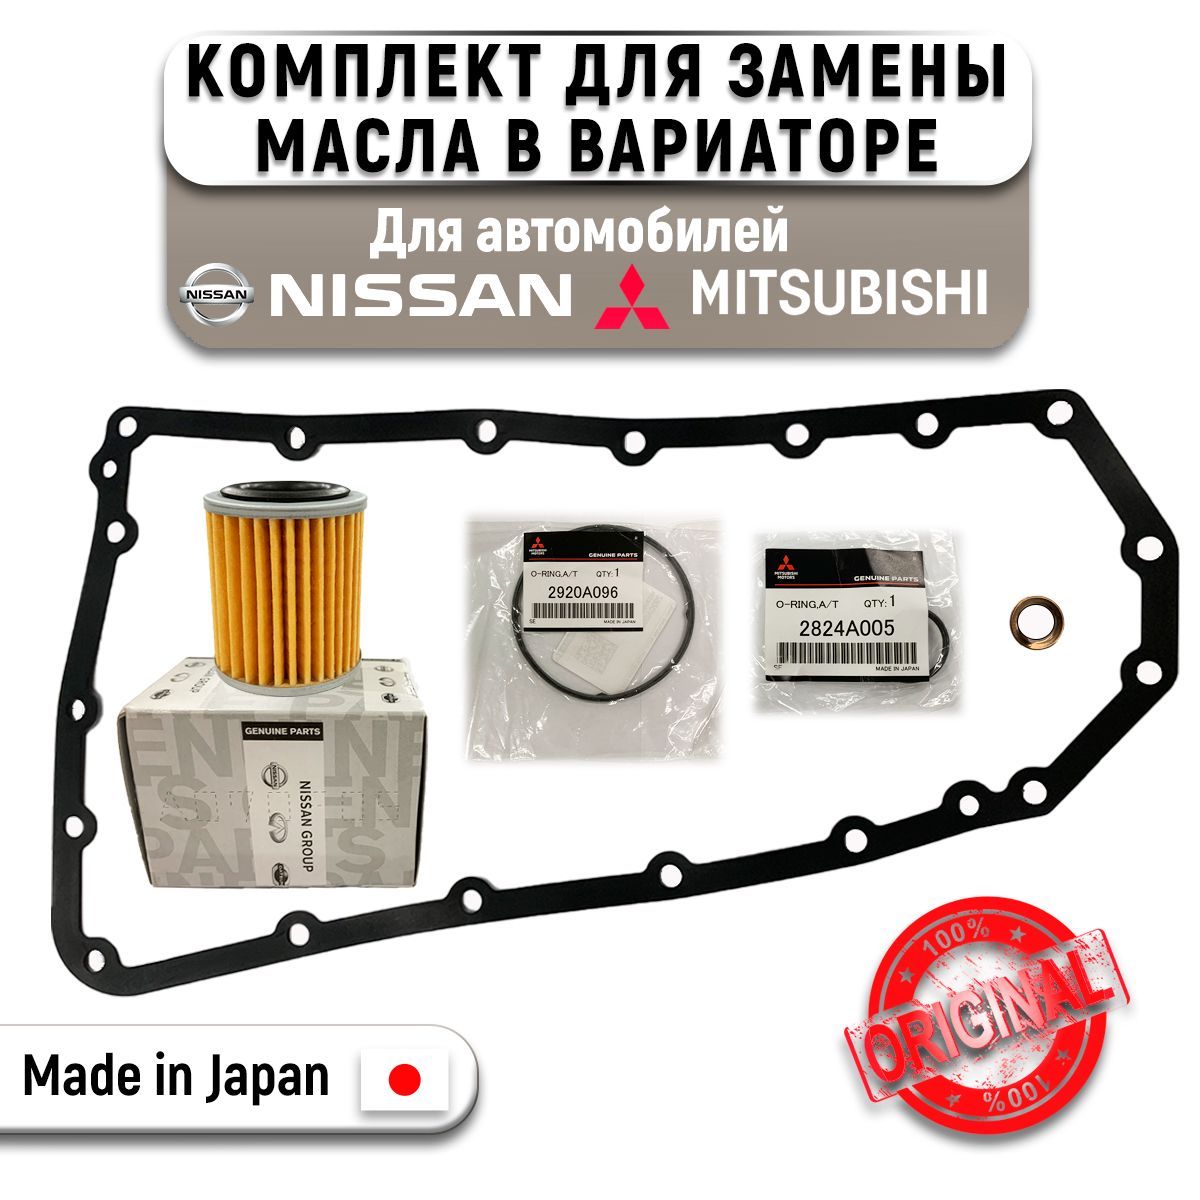 Как заменить масло и фильтры в вариаторе Nissan Jatco своими руками